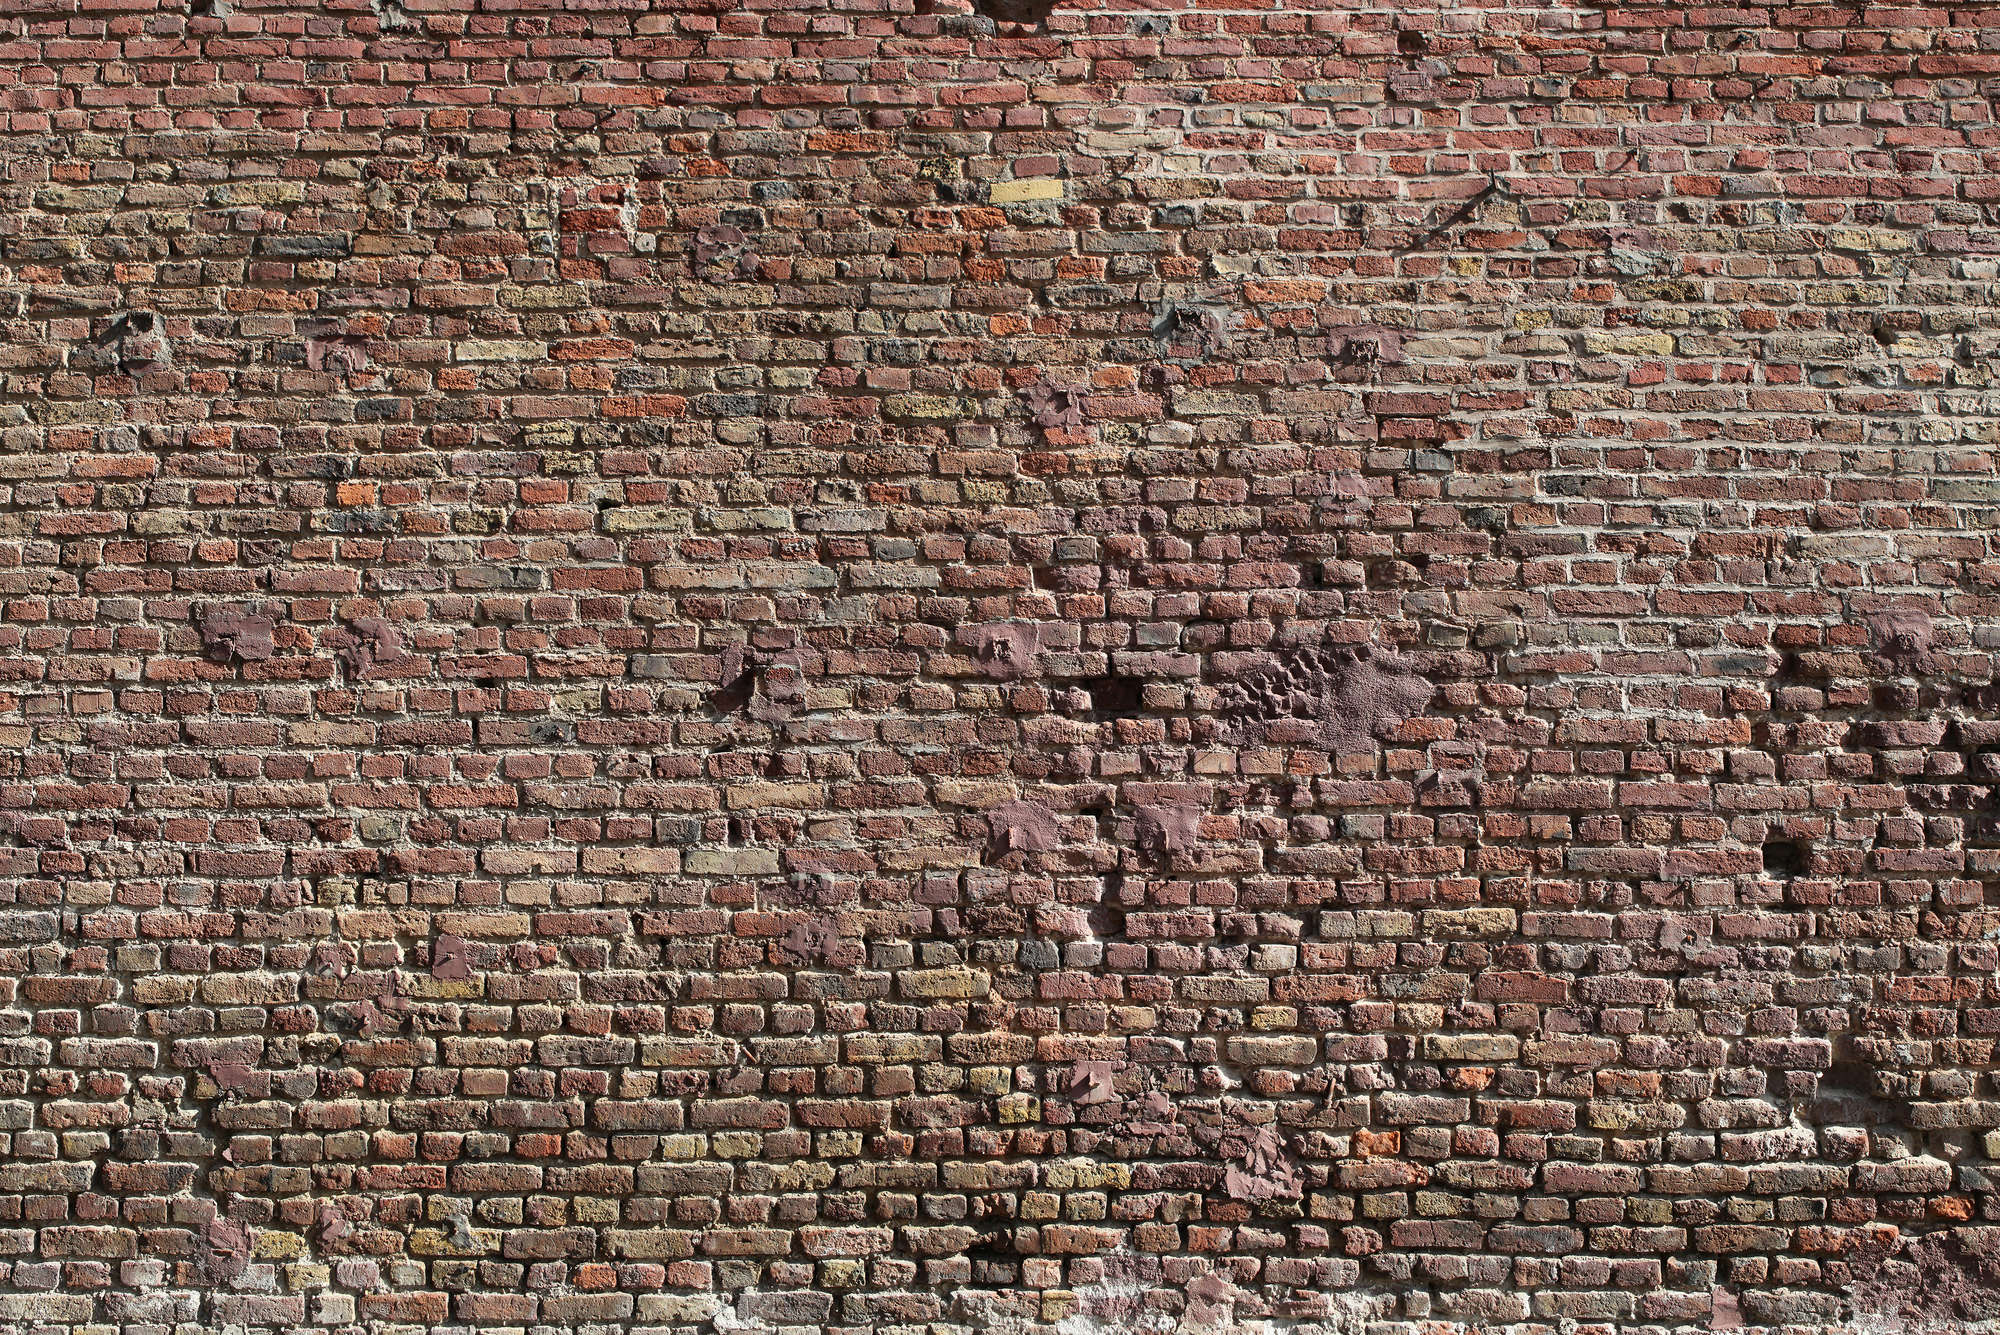             Papier peint panoramique mur de briques rustique, briques rouges
        